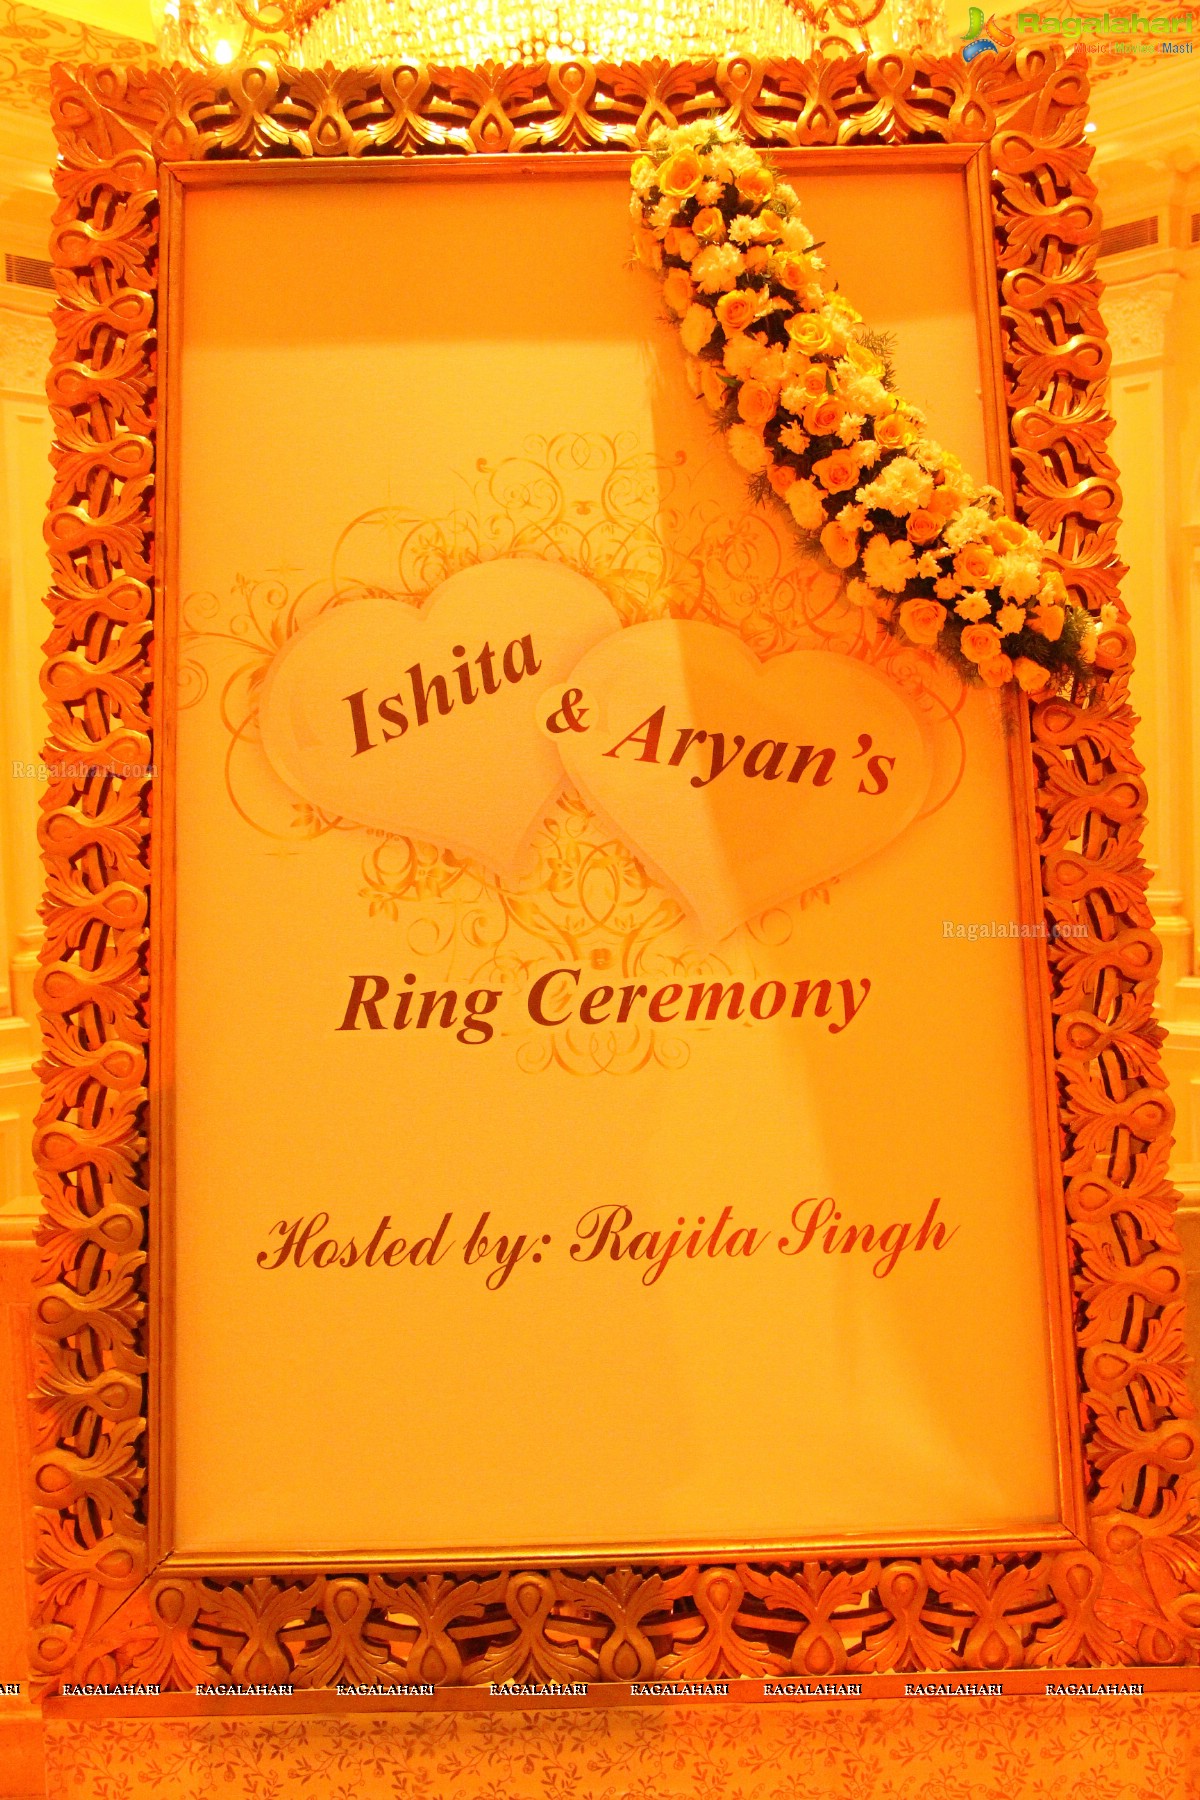 Ring Ceremony of Ishita and Aryan